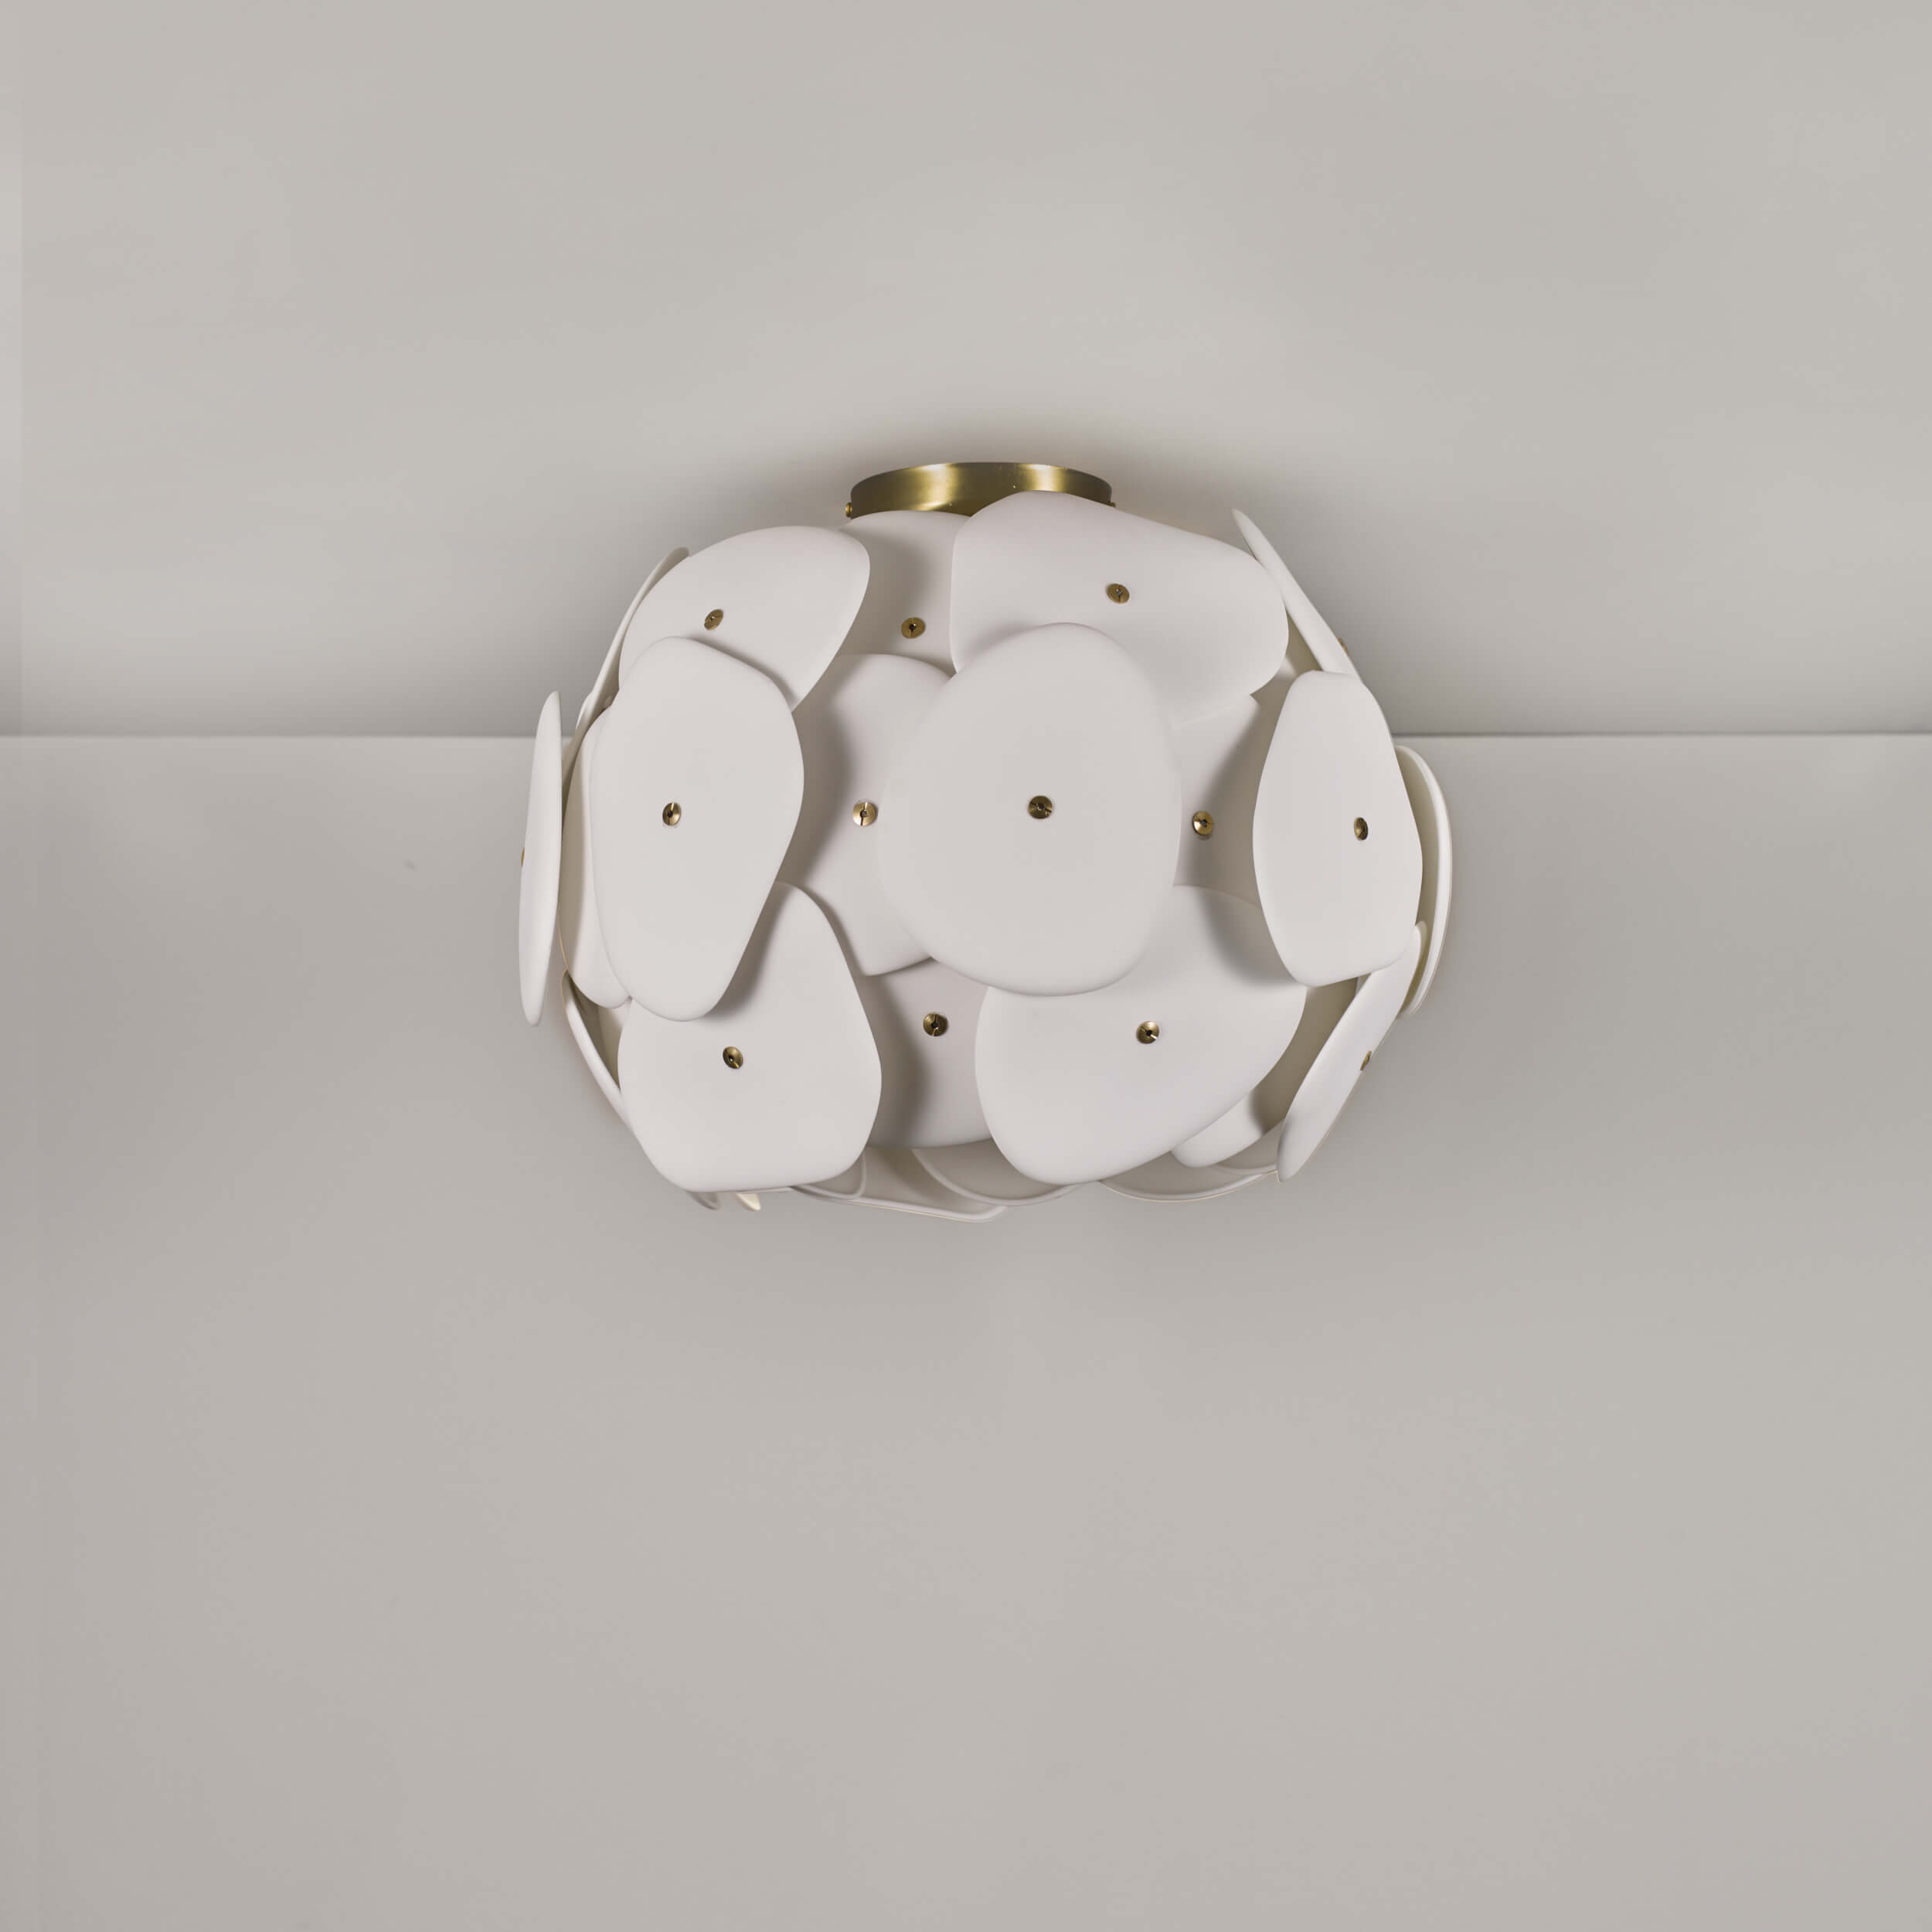 Deckenleuchte PEBBLE aus filigranen Porzellan-Platten, Ø 45 cm: Im ausgeschalteten Zustand erscheint das Knochen-Porzellan ganz weiß